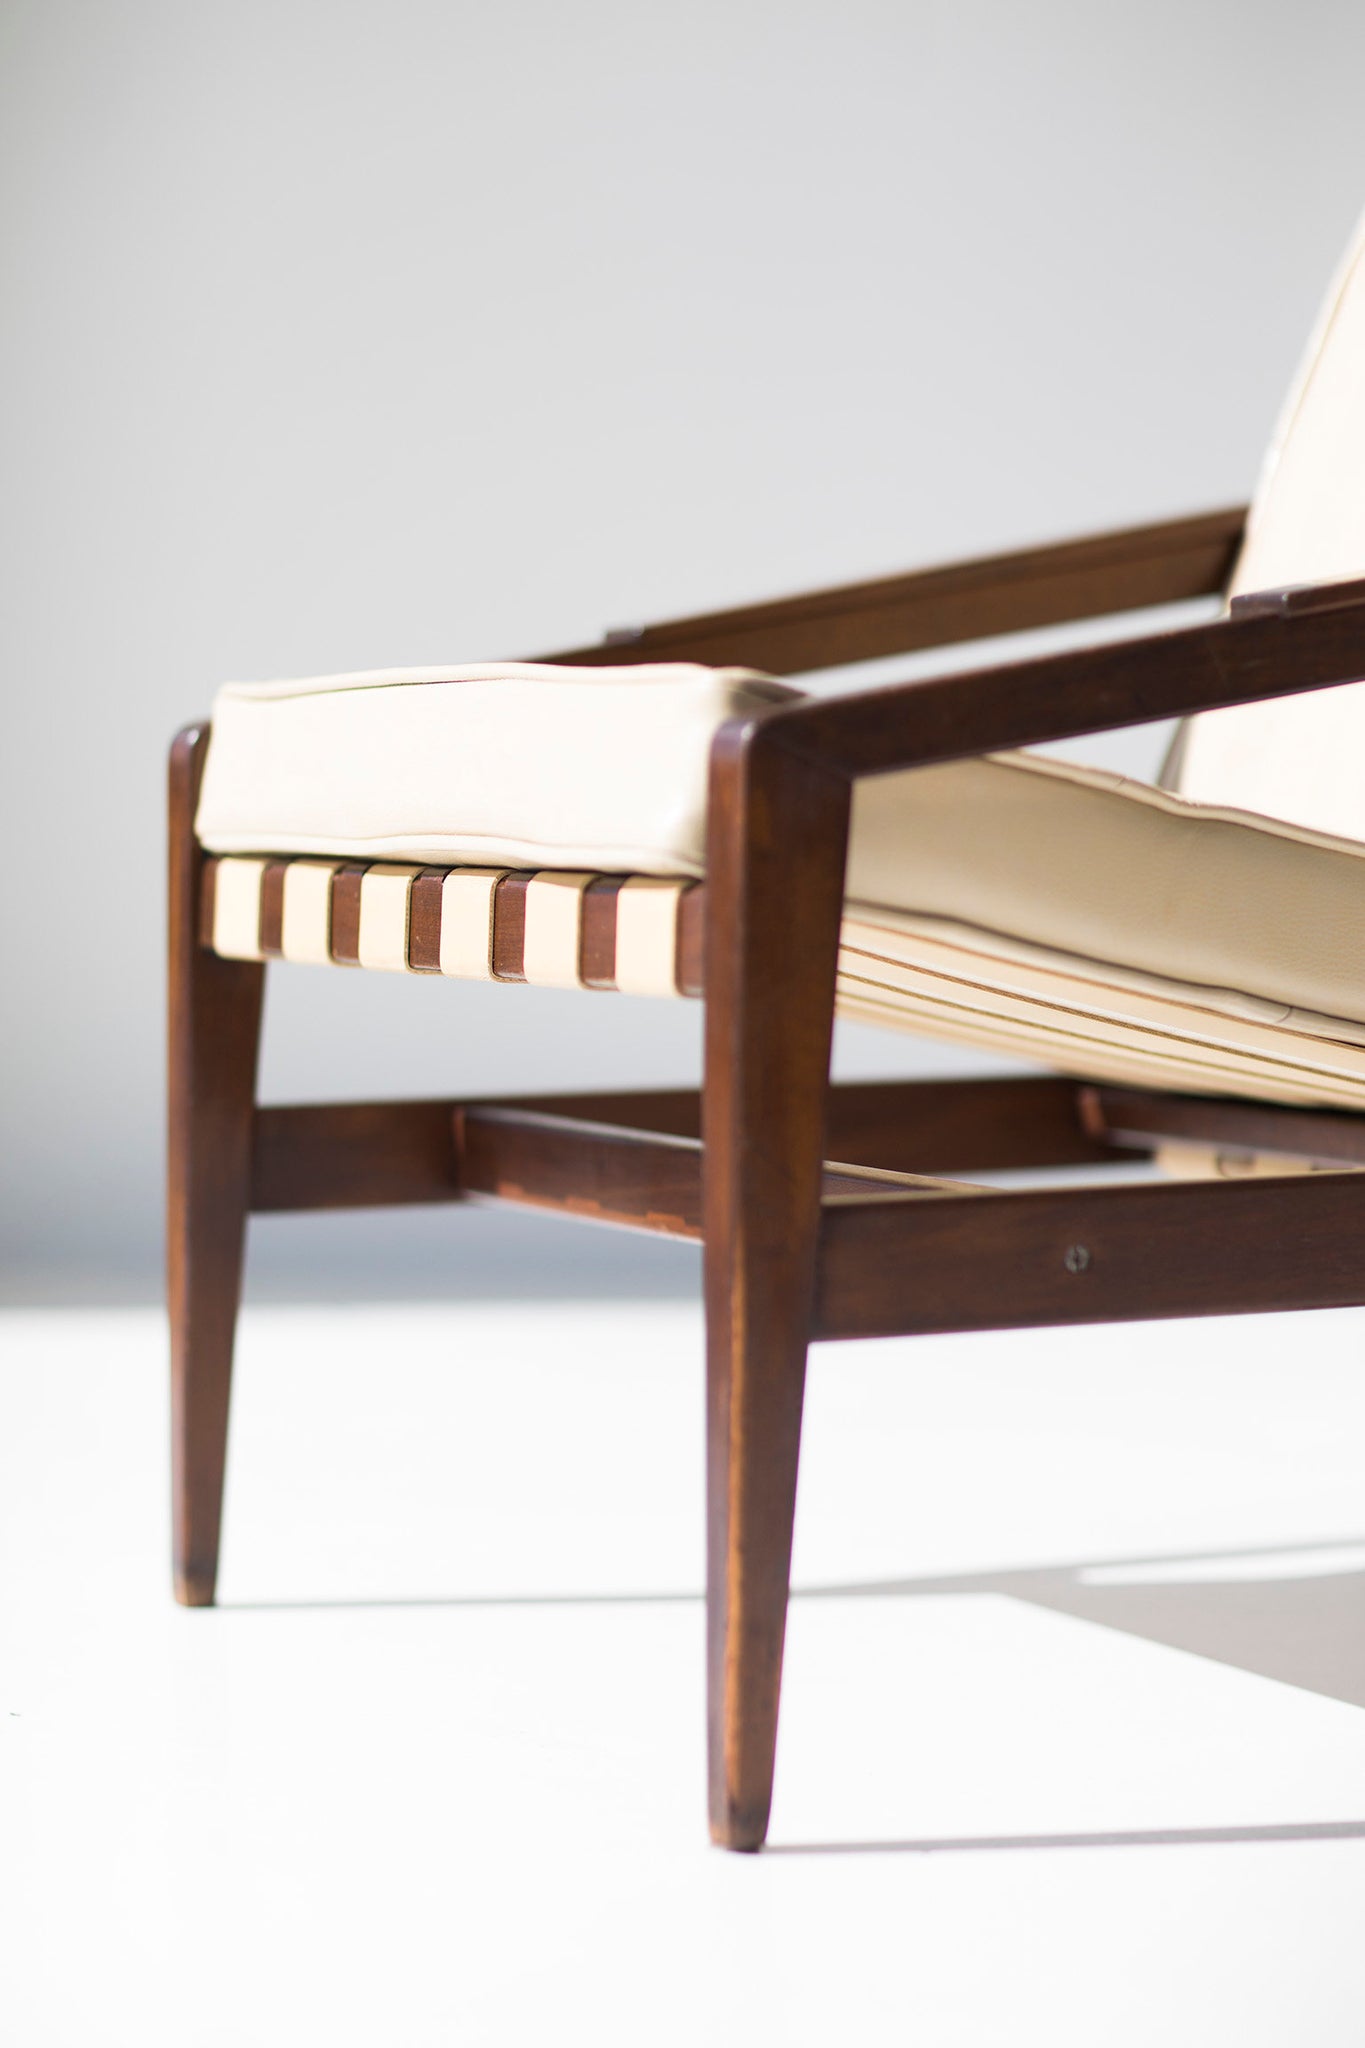 Rare-IB-Kofod-Larsen-Lounge-Chair-Selig-003